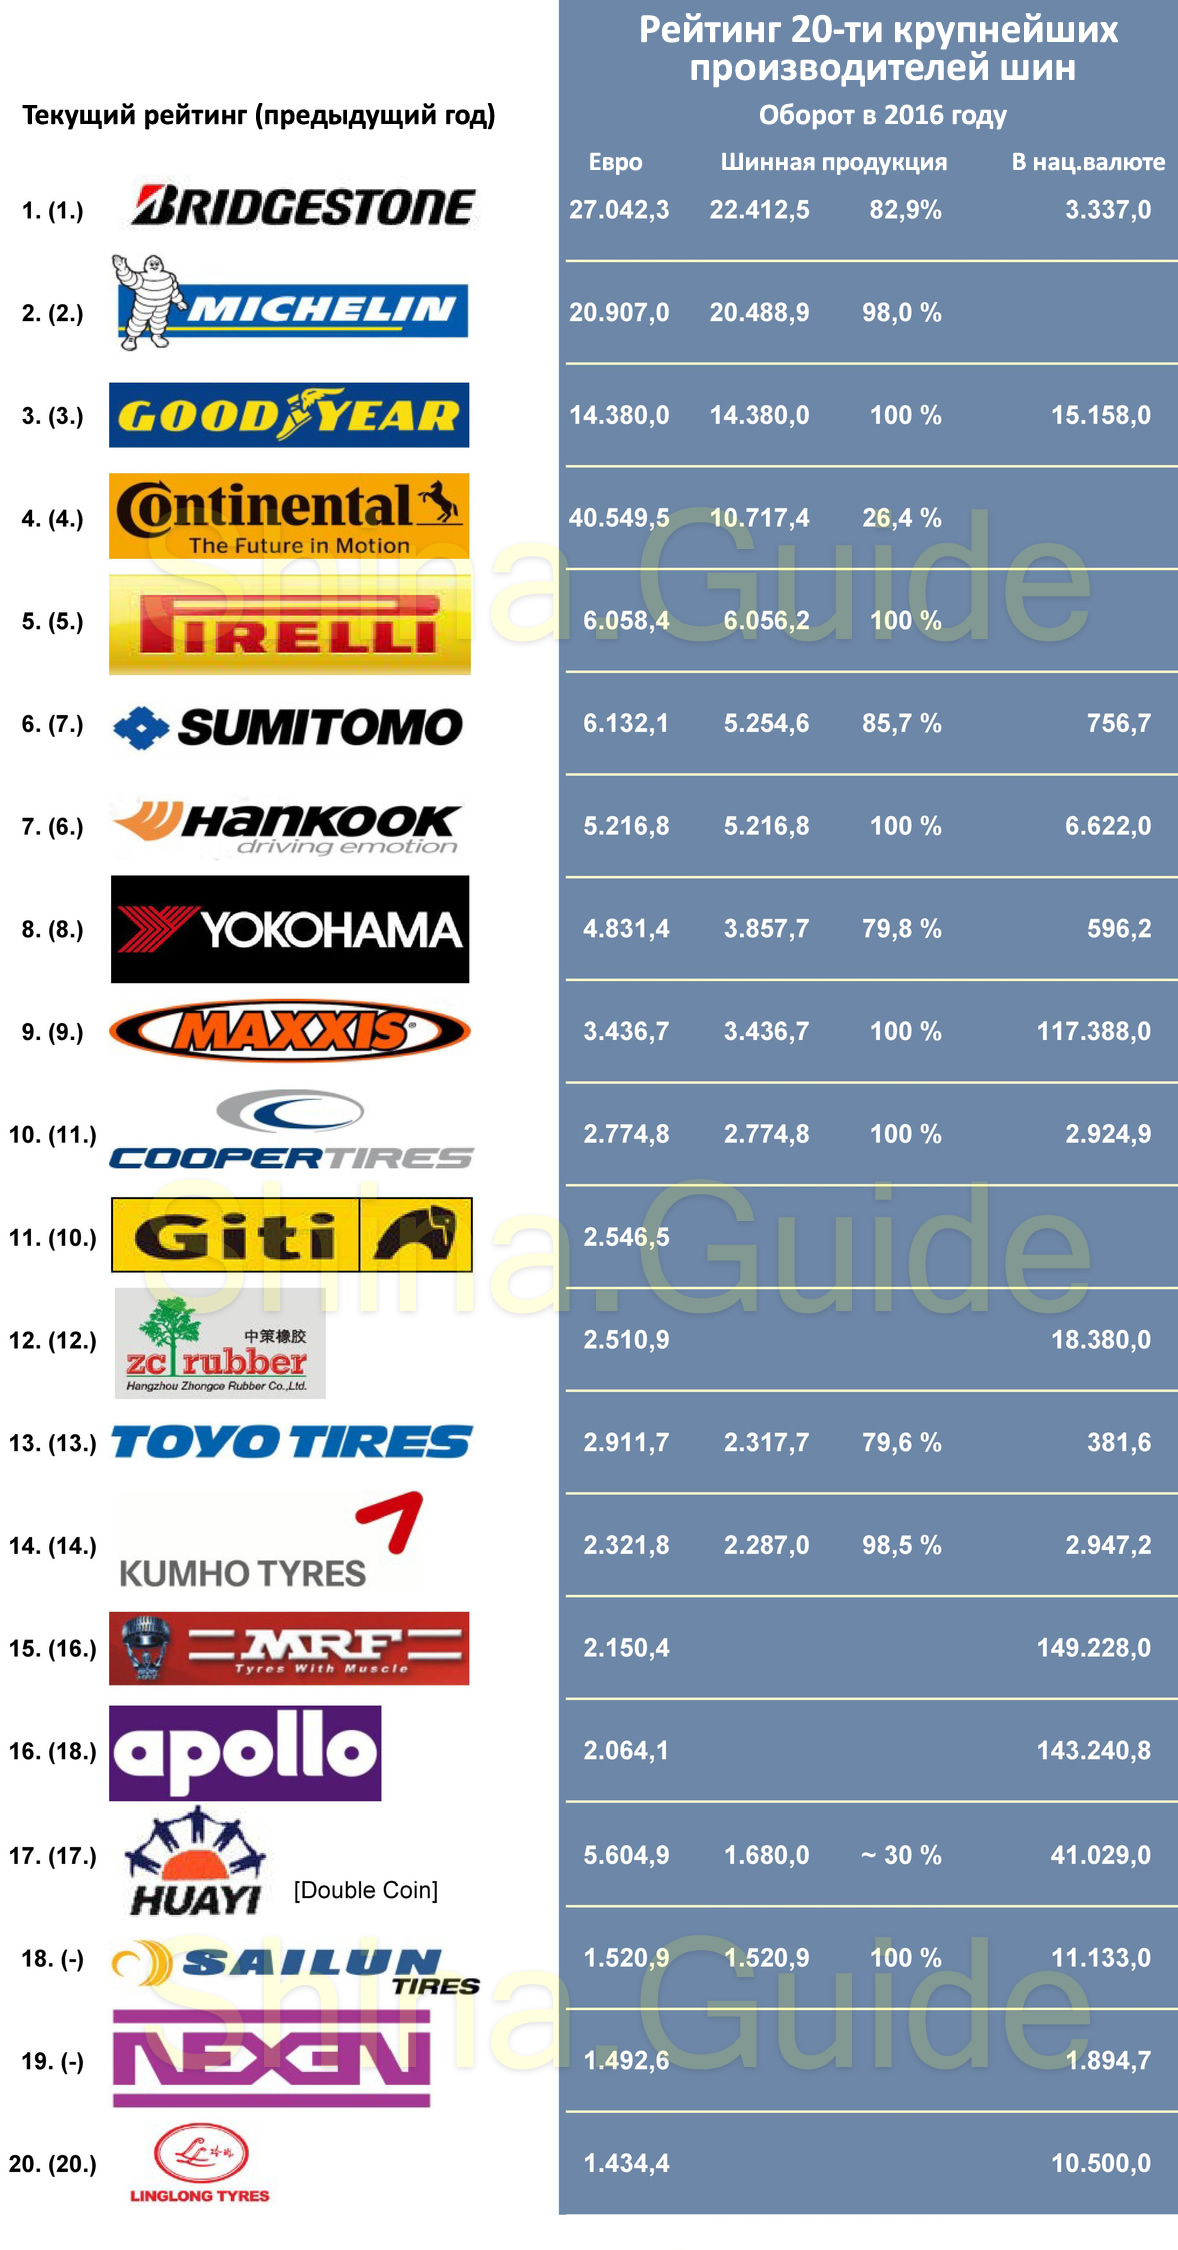 Топ-20 шинных производителей 2016 по версии Neue Reifenzeiting (NRZ)